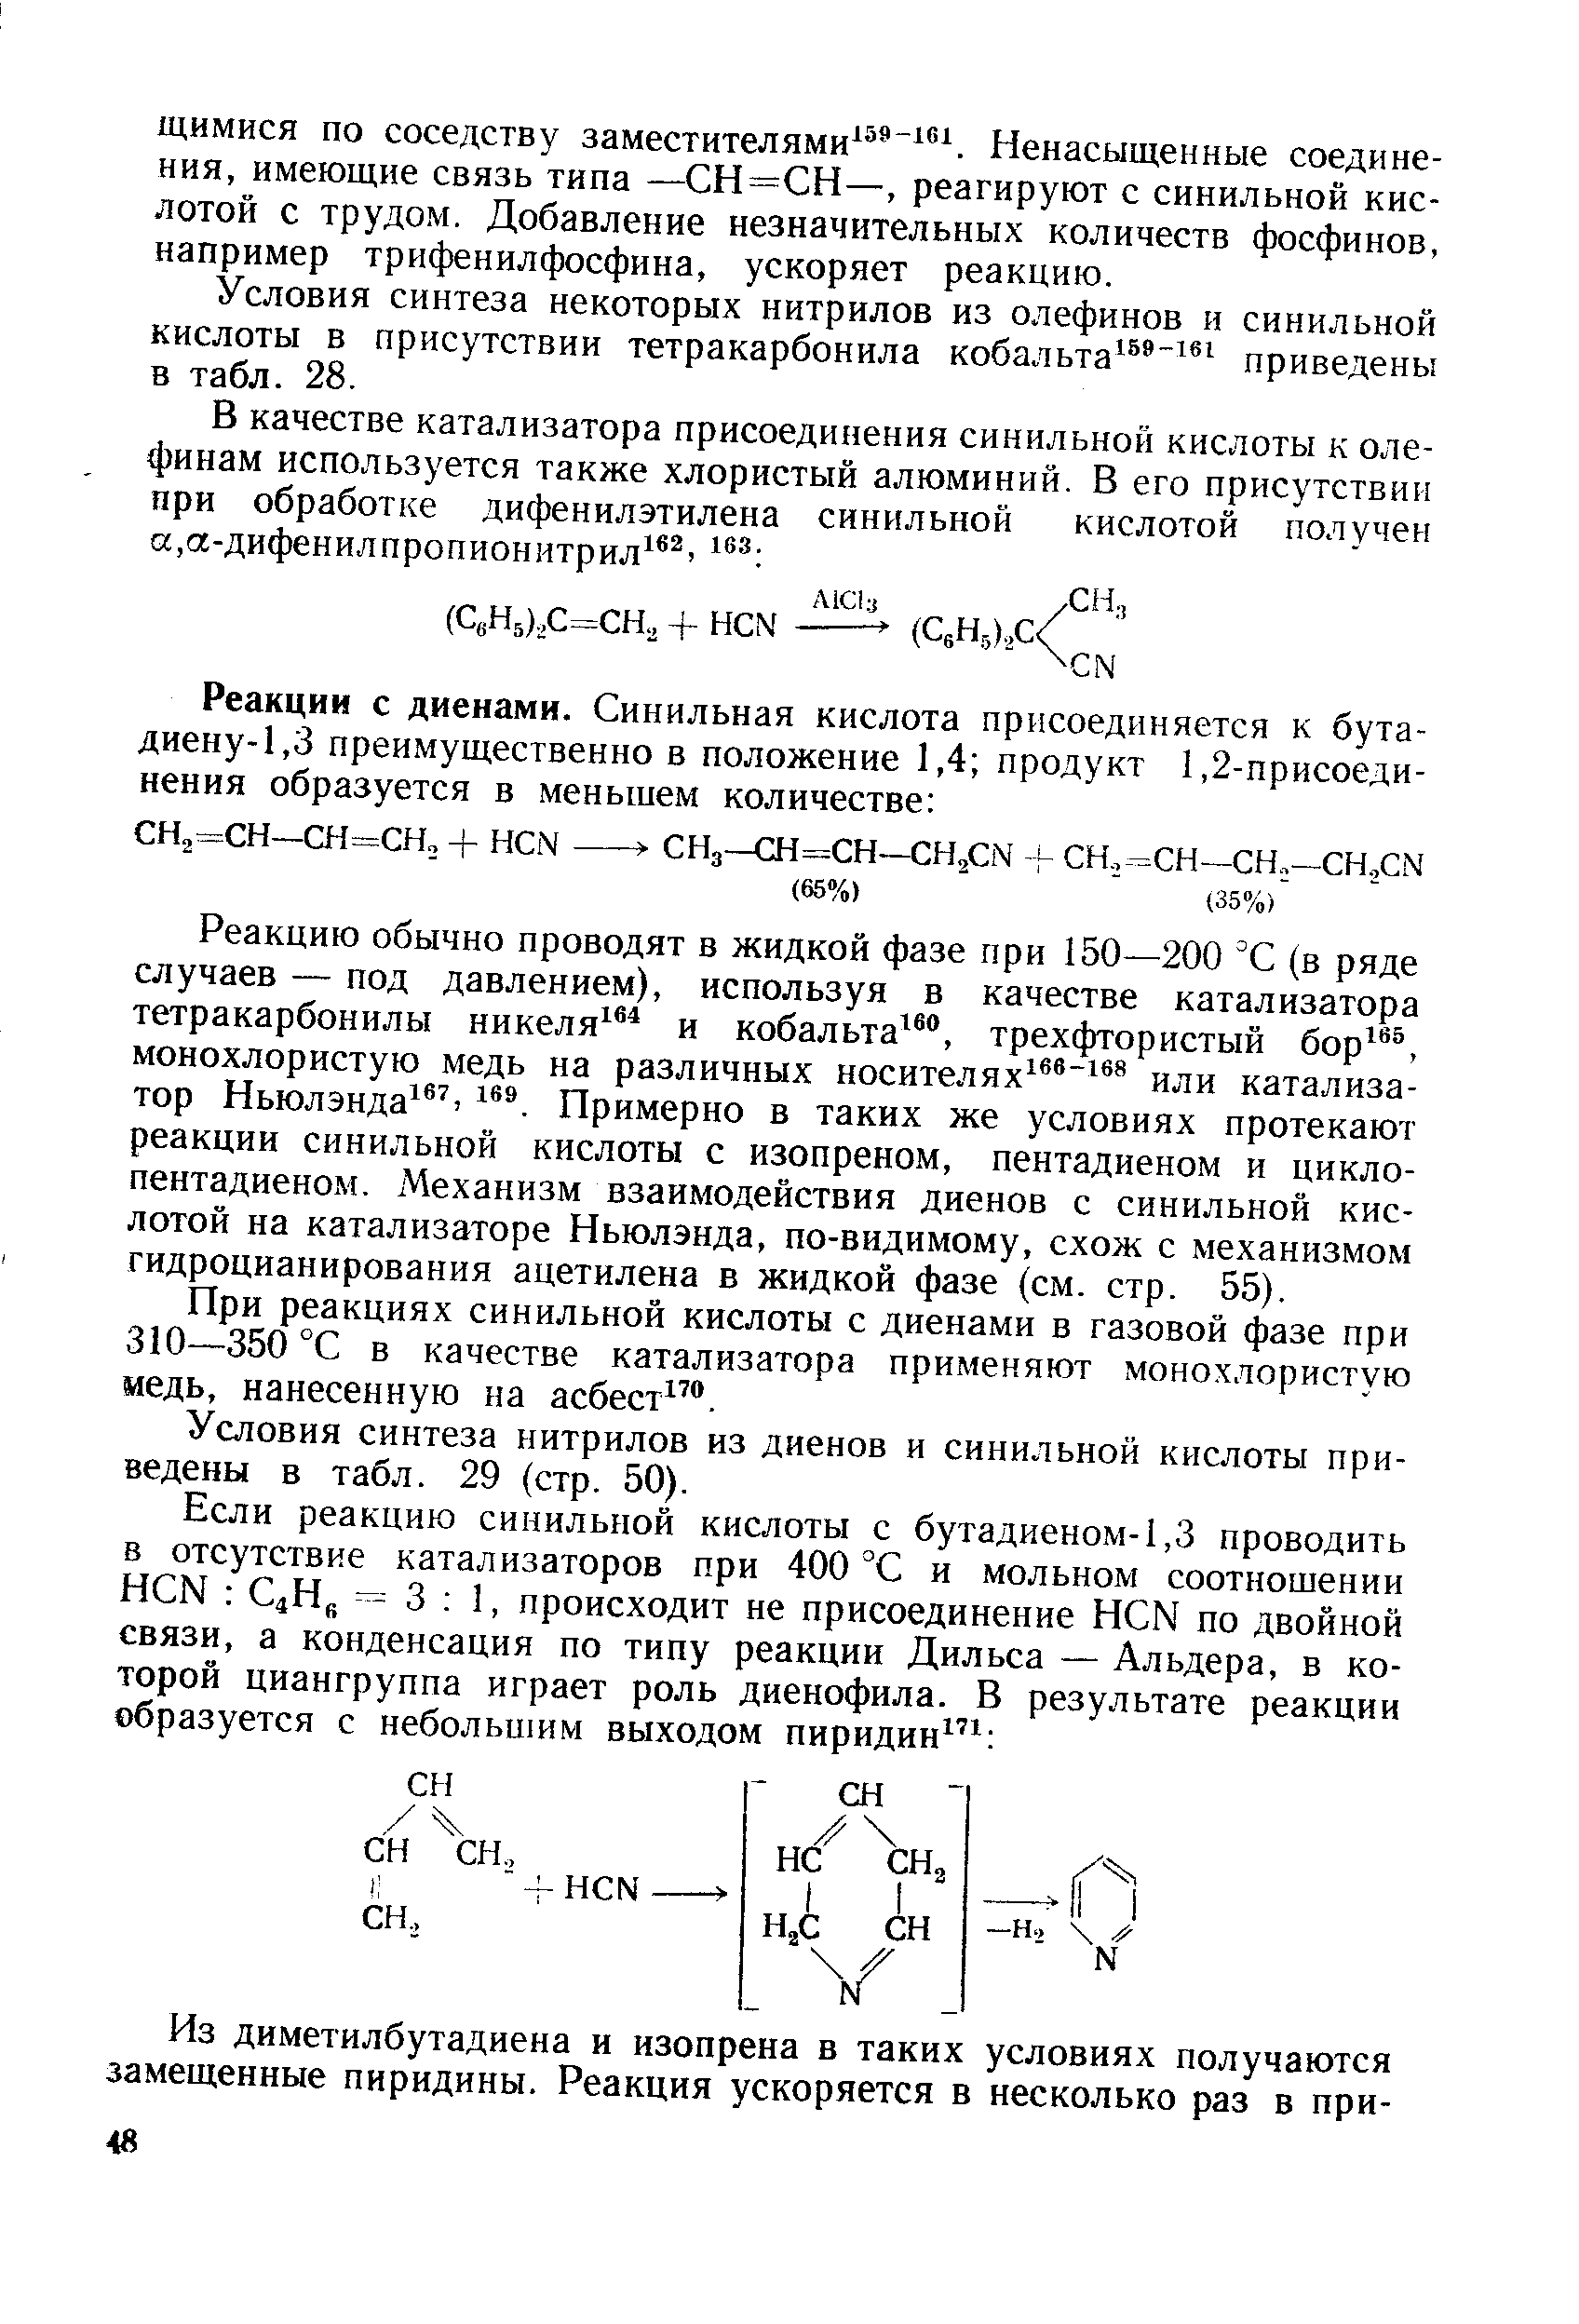 Условия синтеза некоторых нитрилов из олефинов и синильной кислоты в присутствии тетракарбонила кoбaльтa приведены в табл. 28.